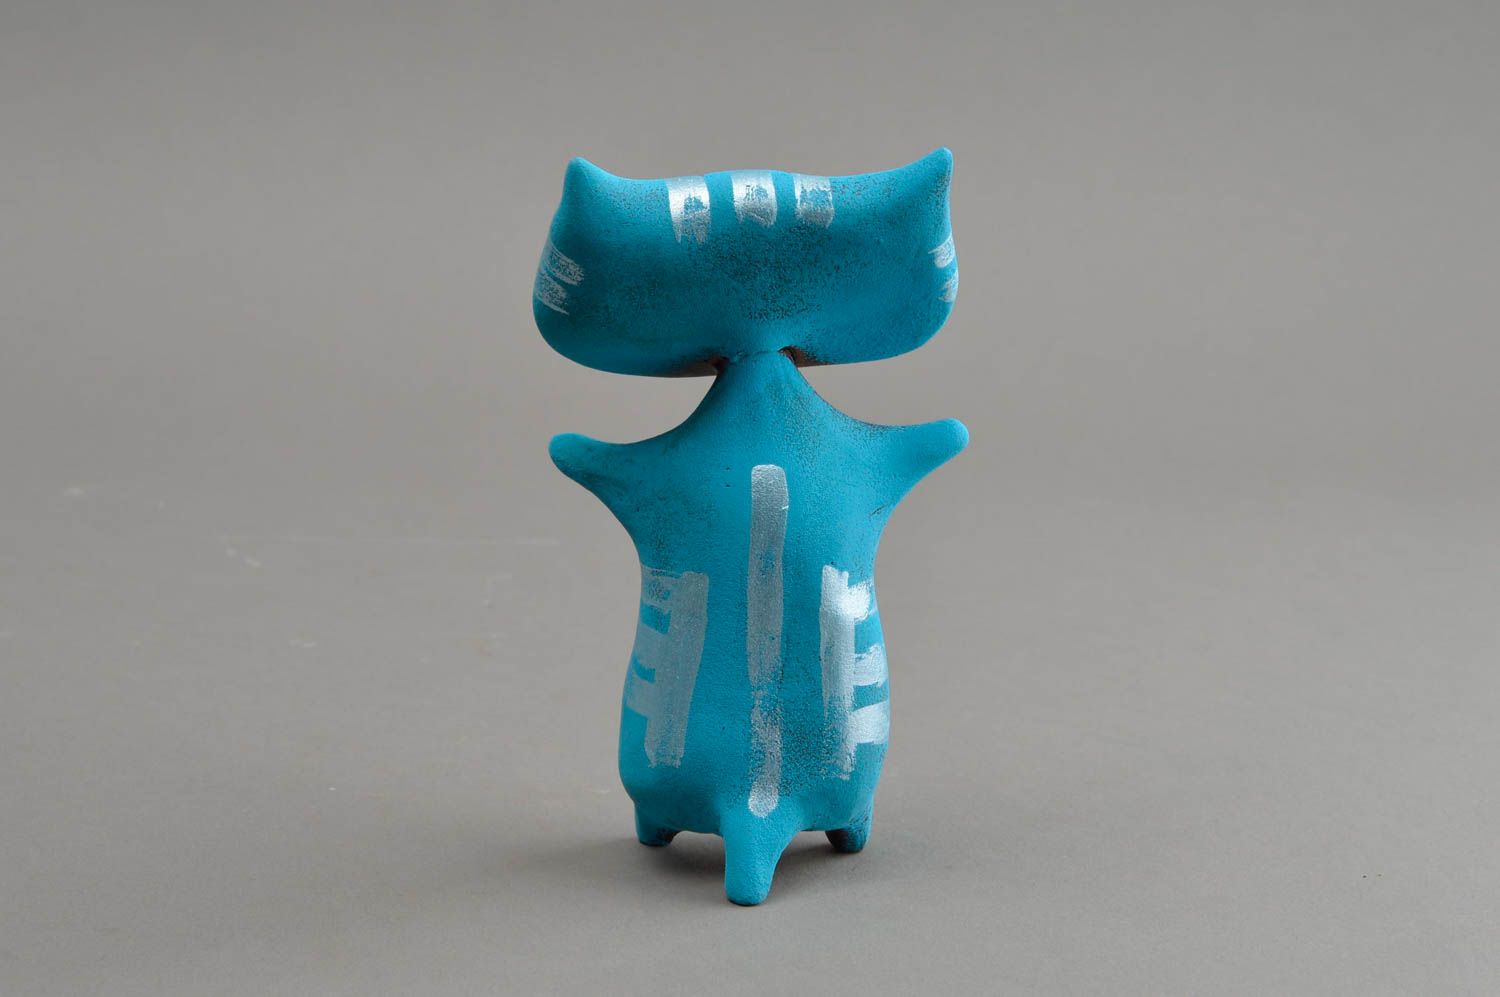 Синяя глиняная статуэтка ручной работы авторского дизайна расписная Кот фото 5